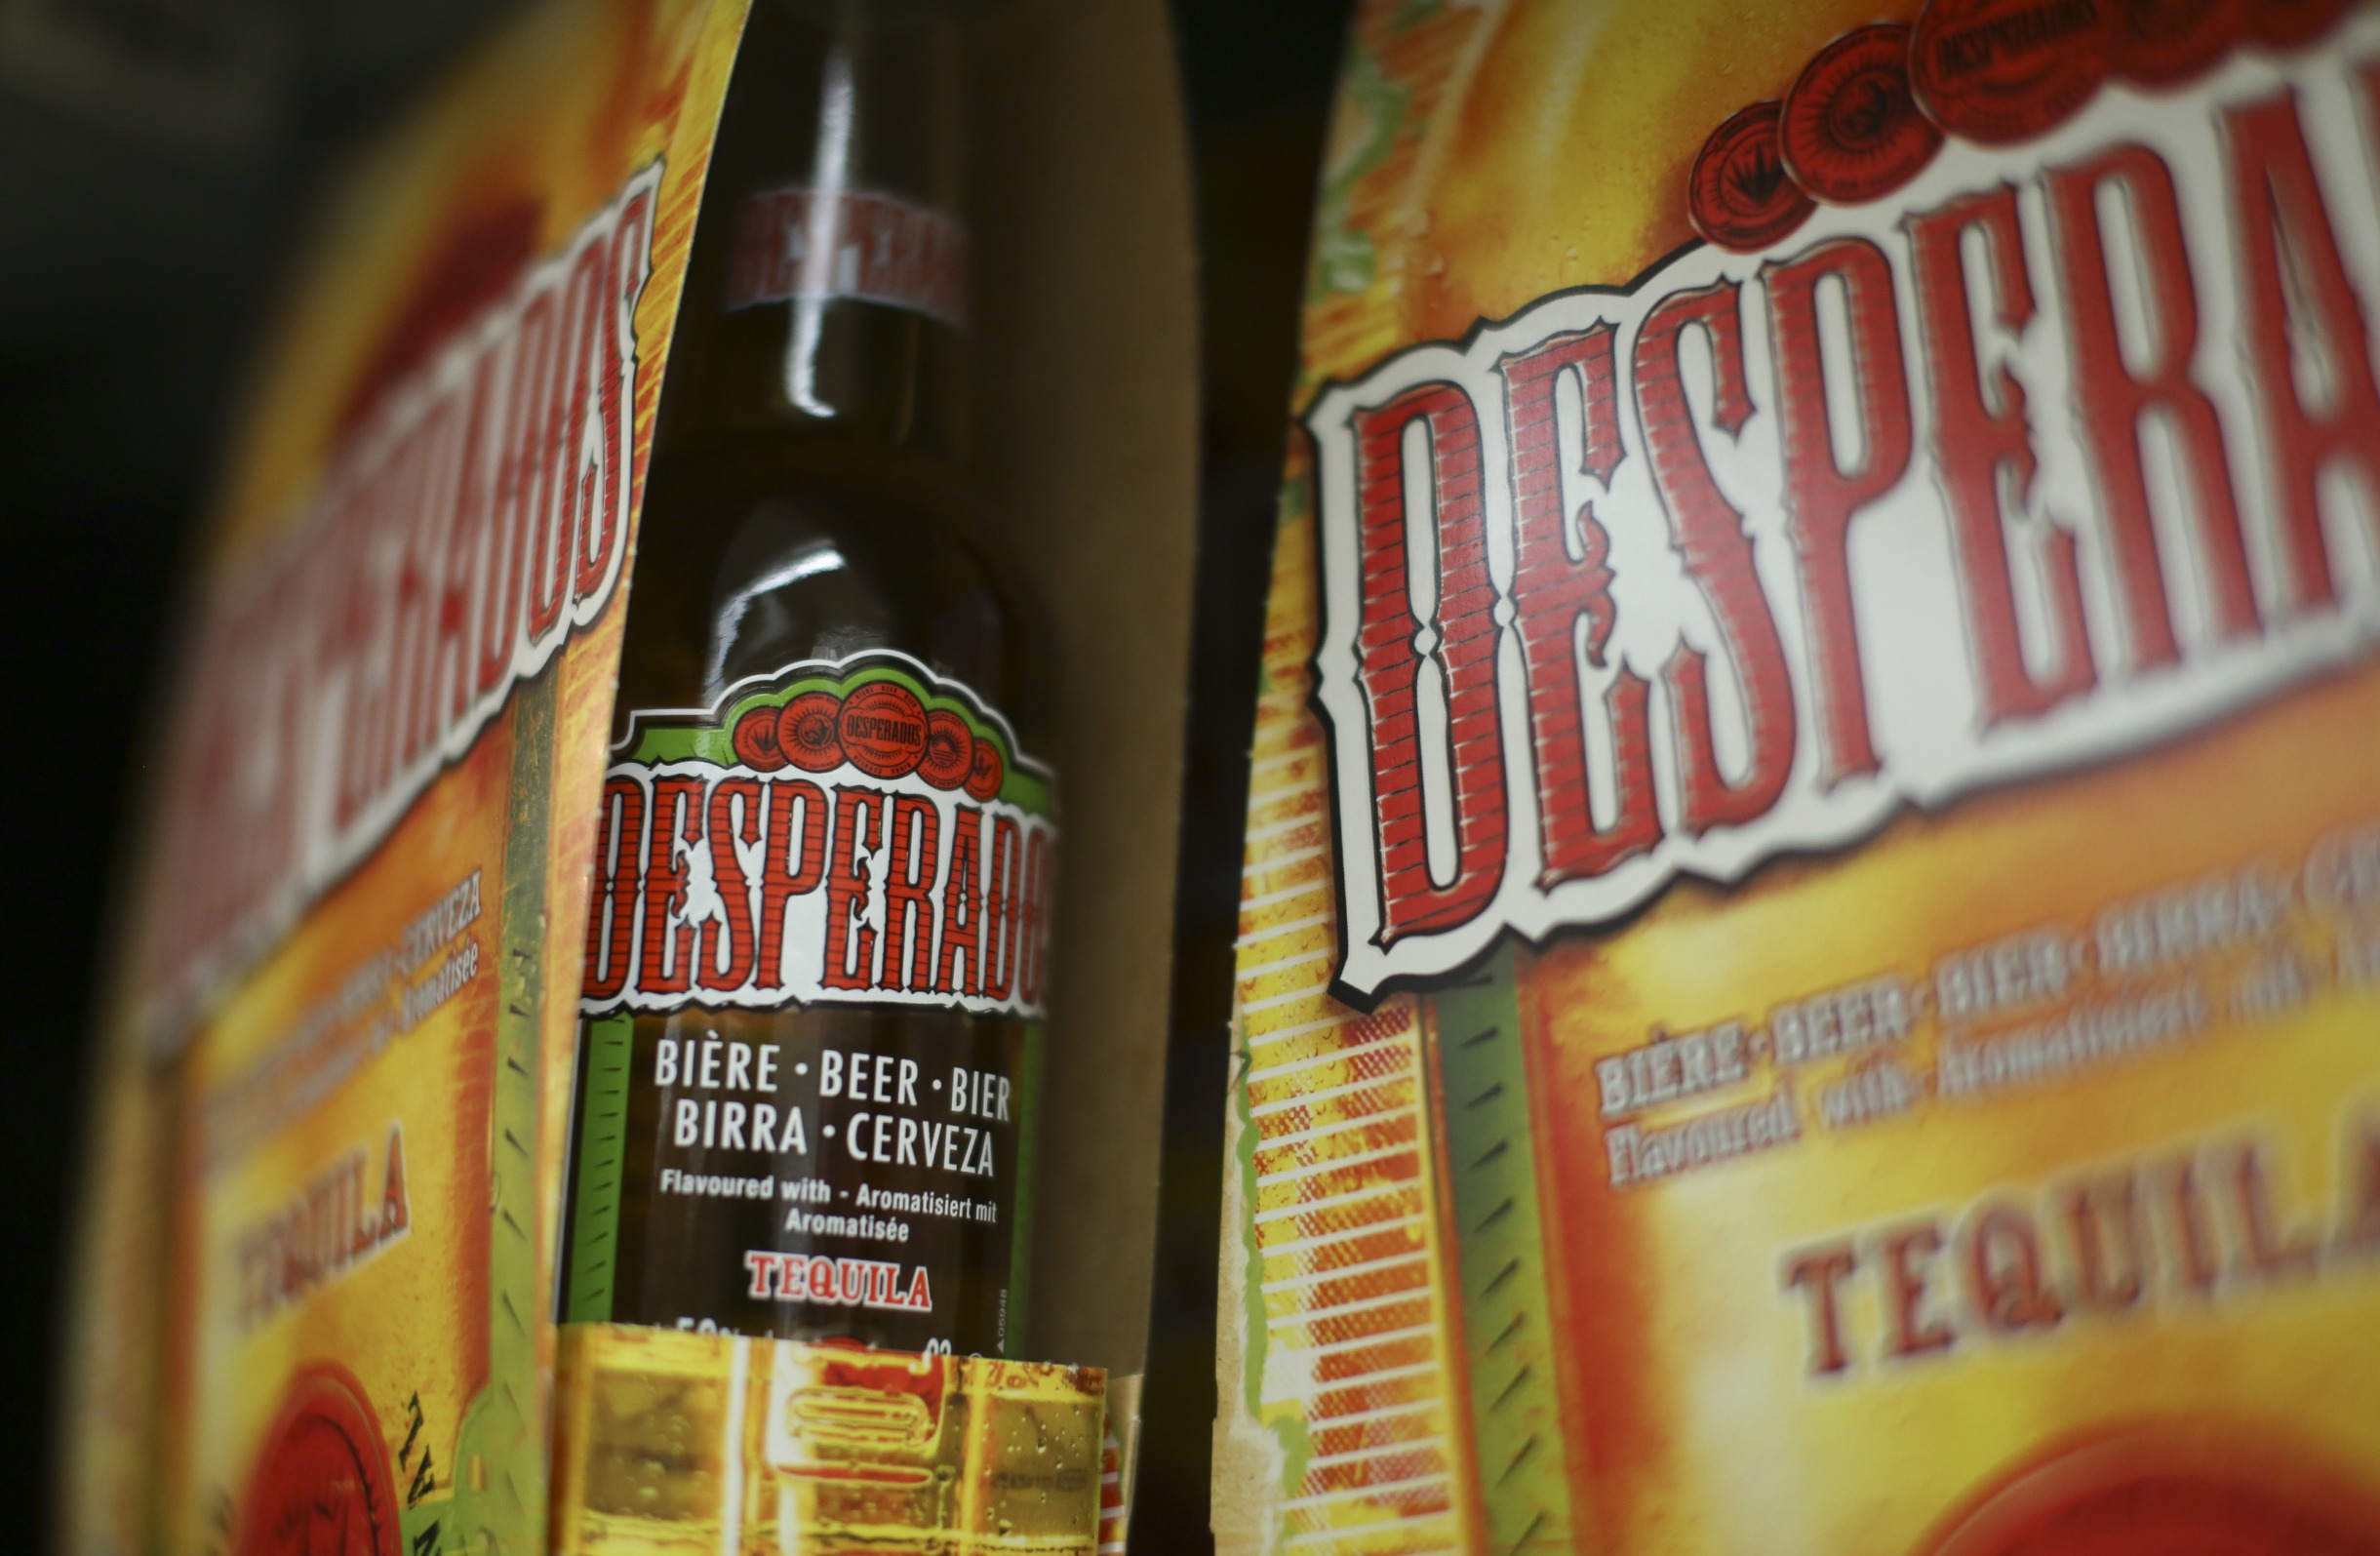 Heineken to Stop Selling Desperados Tequila-Flavored Beer in the U.S.